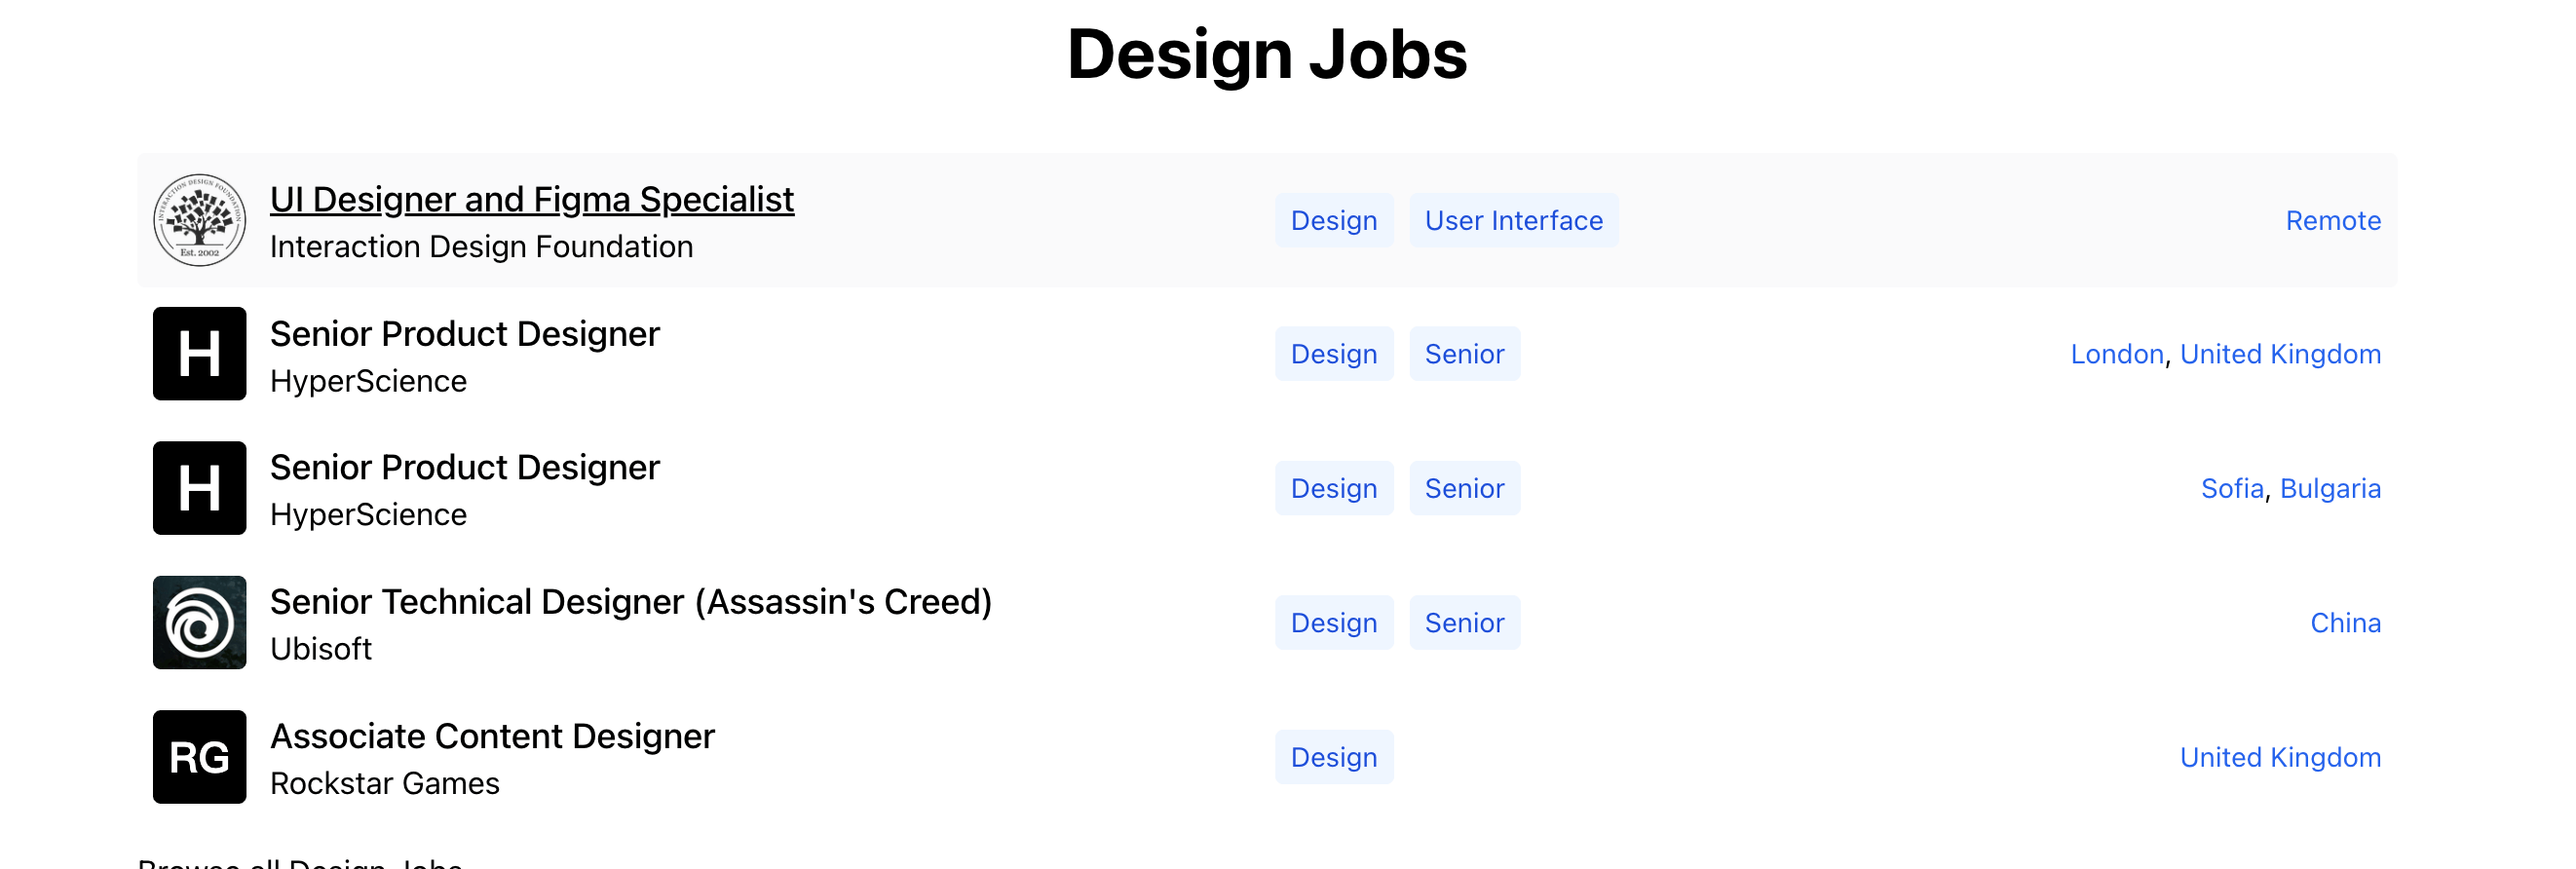 Startup jobs